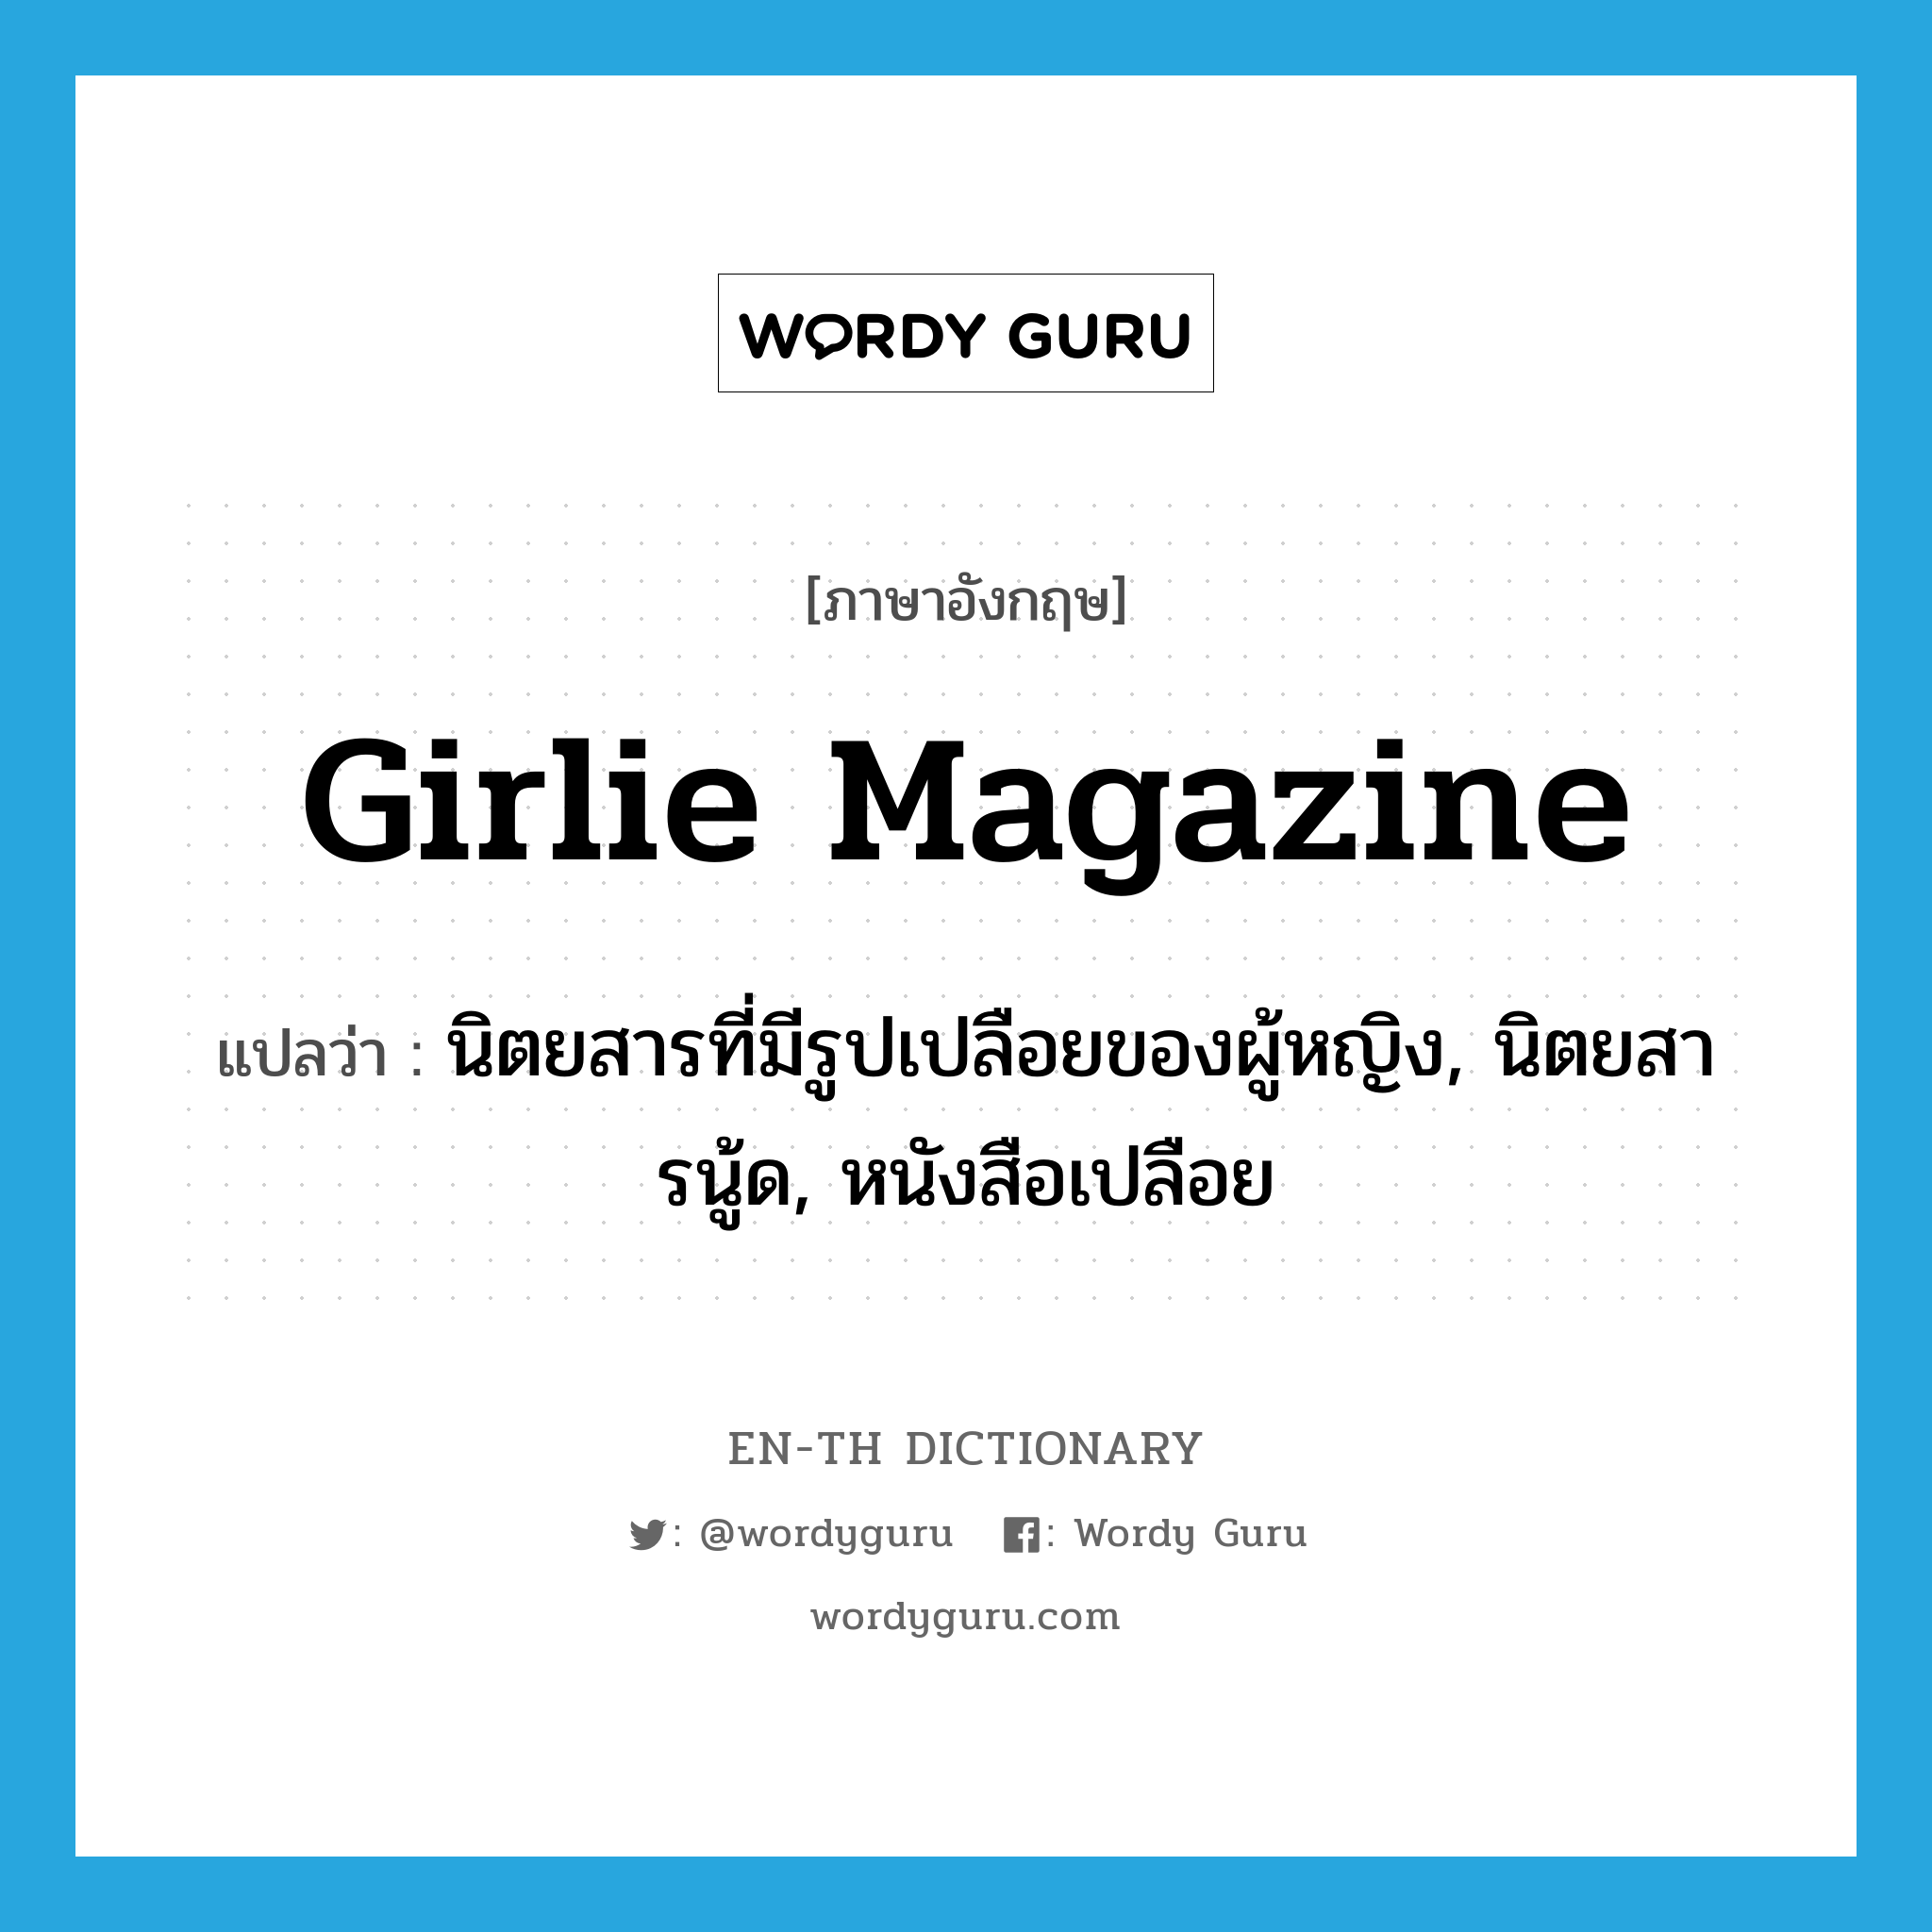 girlie magazine แปลว่า?, คำศัพท์ภาษาอังกฤษ girlie magazine แปลว่า นิตยสารที่มีรูปเปลือยของผู้หญิง, นิตยสารนู้ด, หนังสือเปลือย ประเภท SL หมวด SL